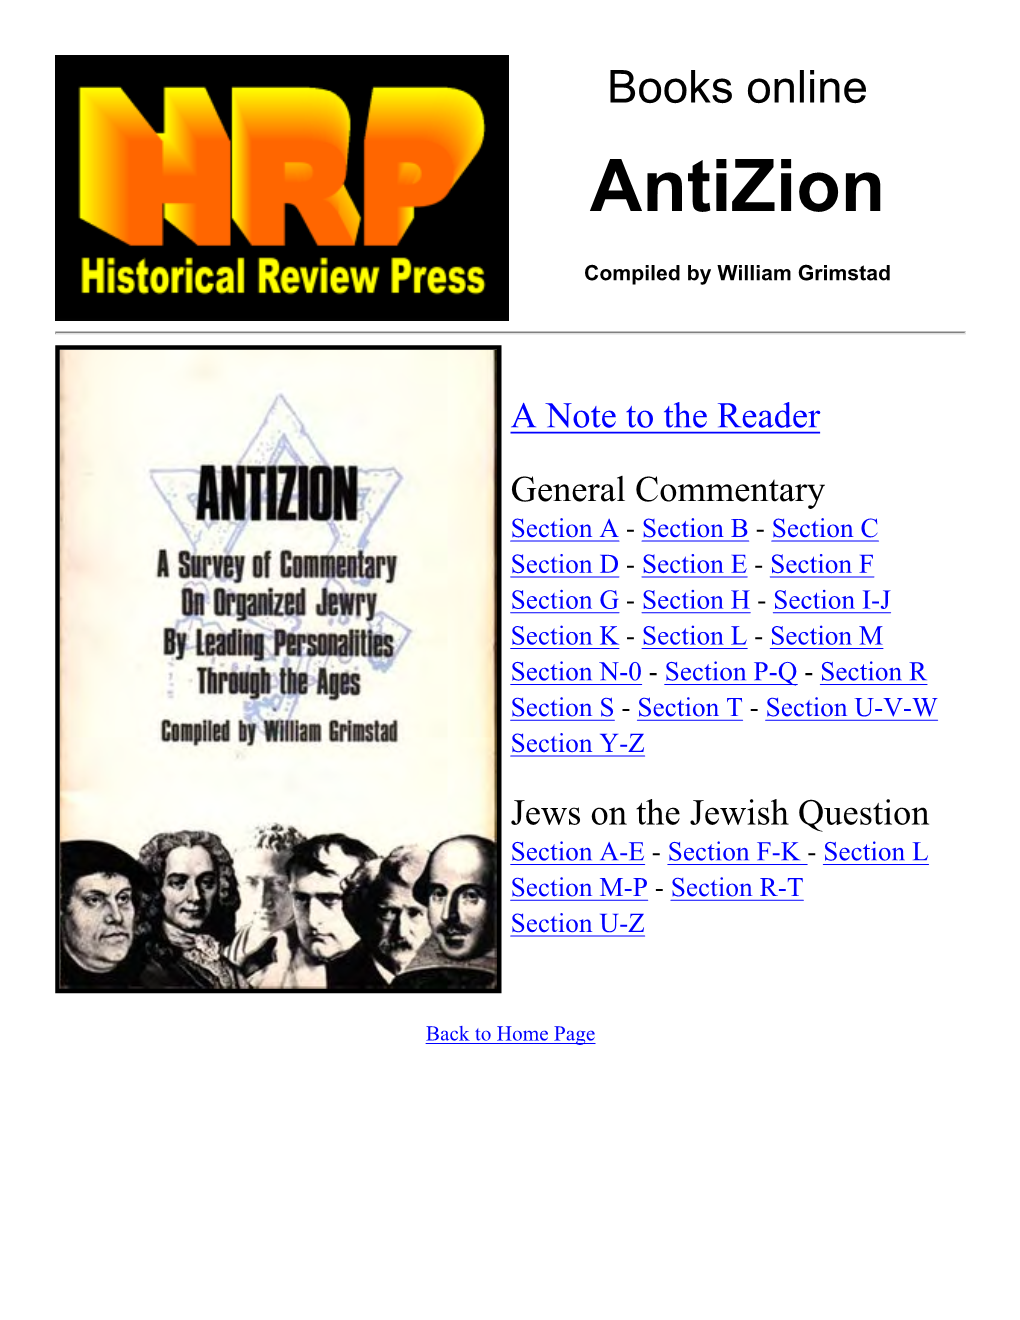 Anti-Zion by William Grimstad